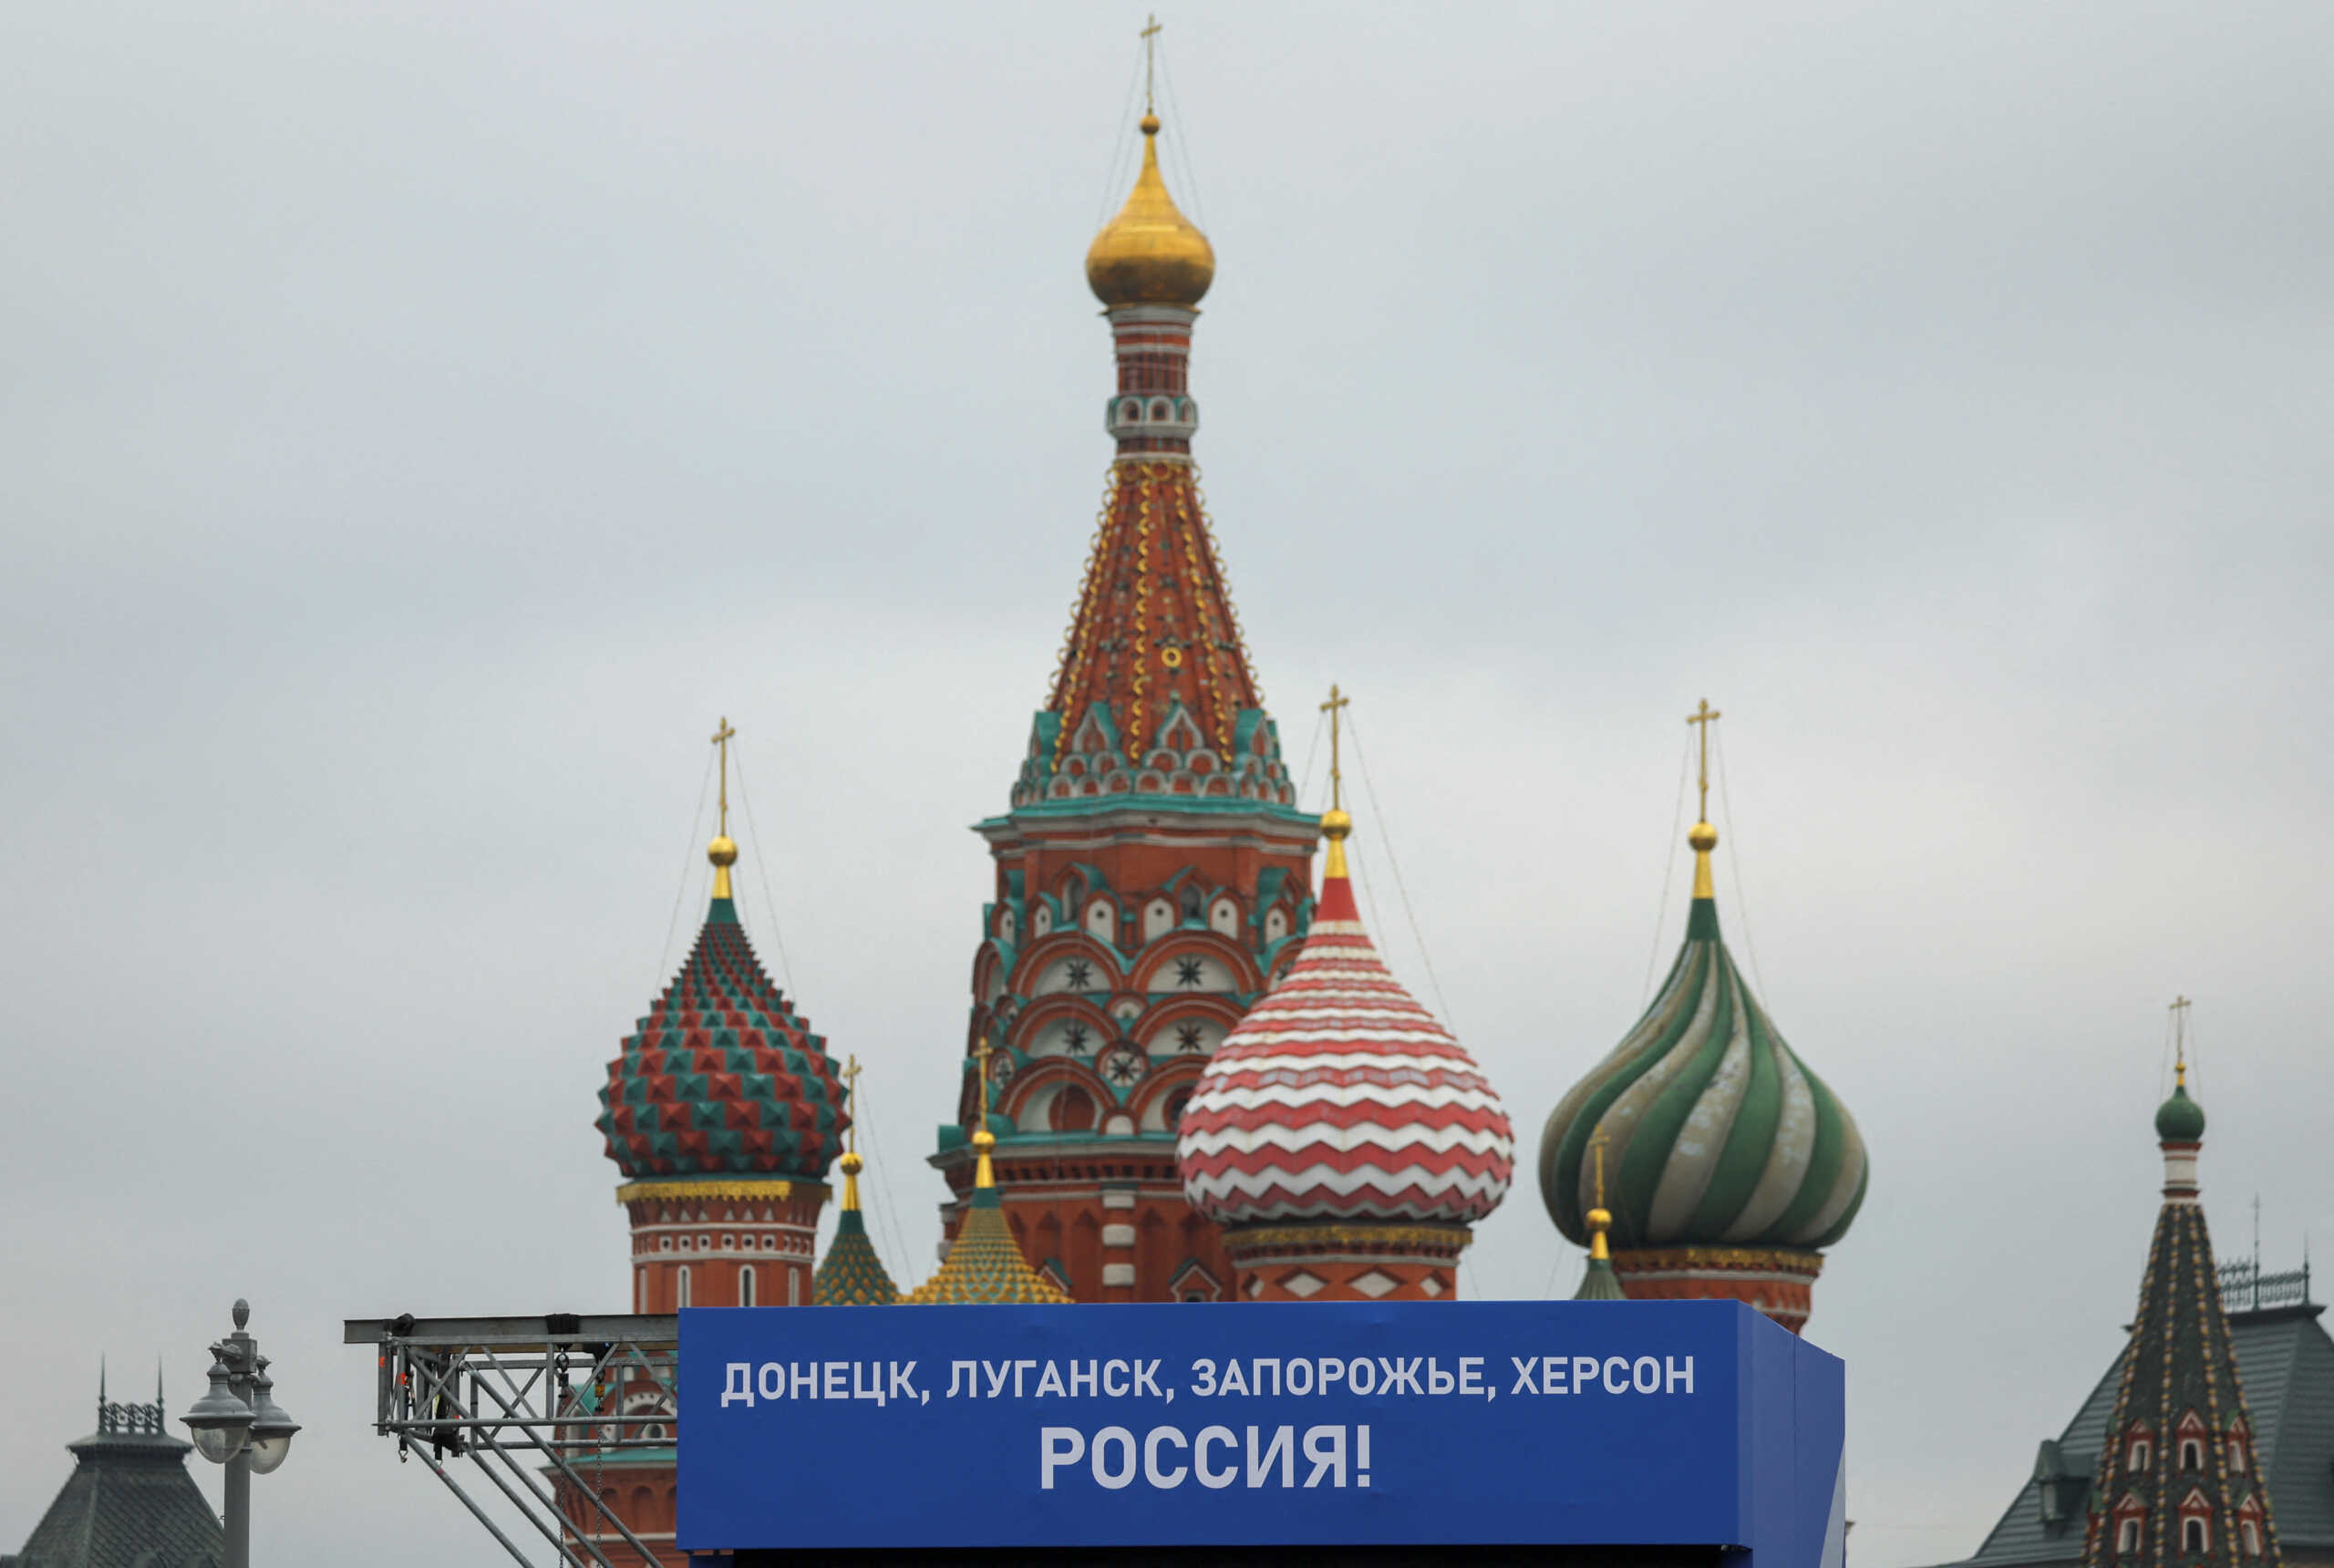 Η Ρωσία προσαρτά περιοχές από την Ουκρανία αλλά δεν ξέρει τα σύνορά τους – Παραδοχή Κρεμλίνου